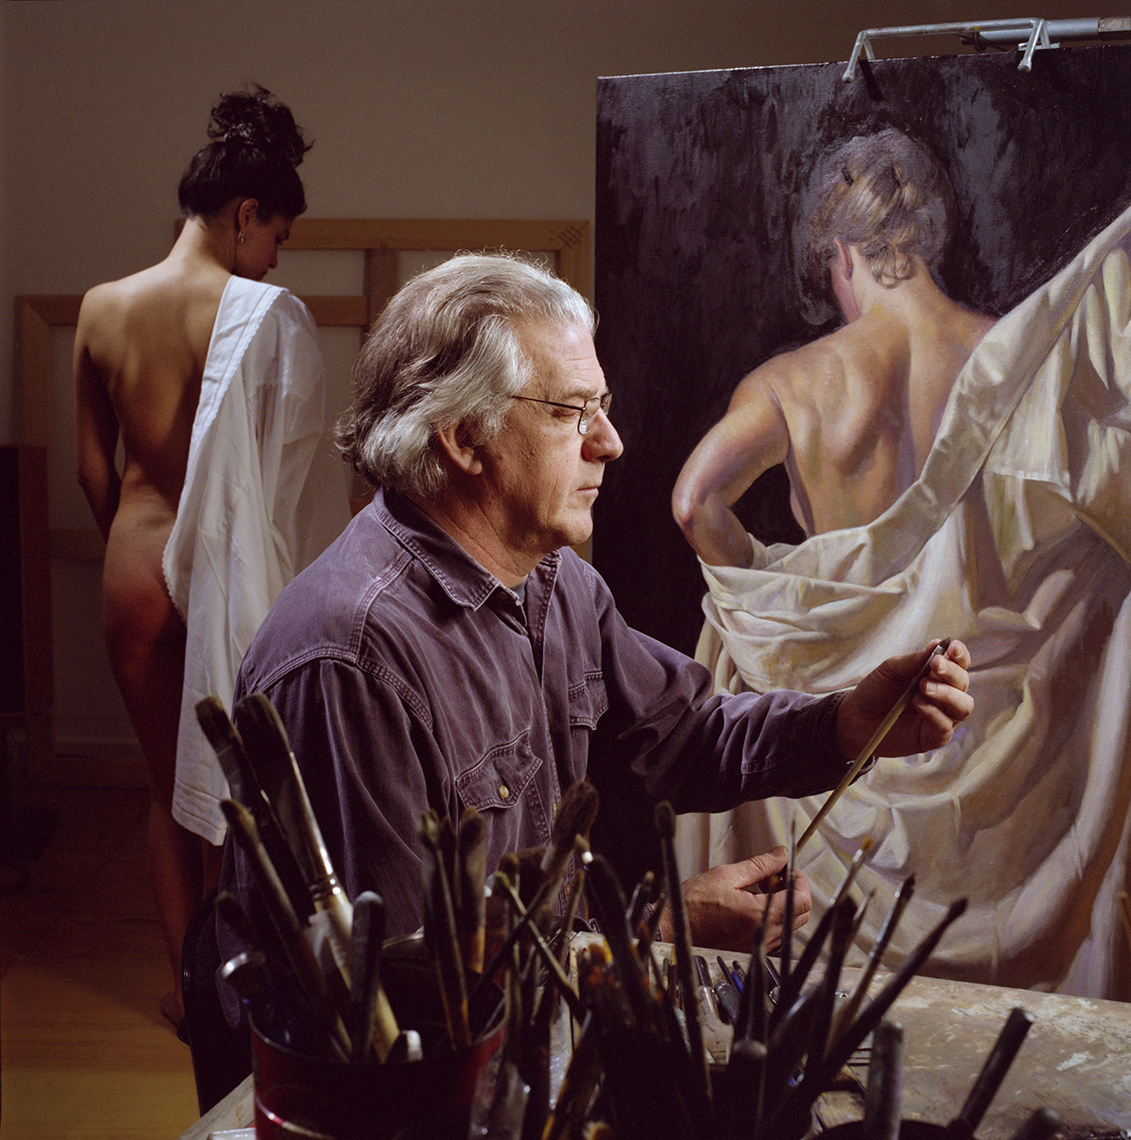 Steve Tanis, painter